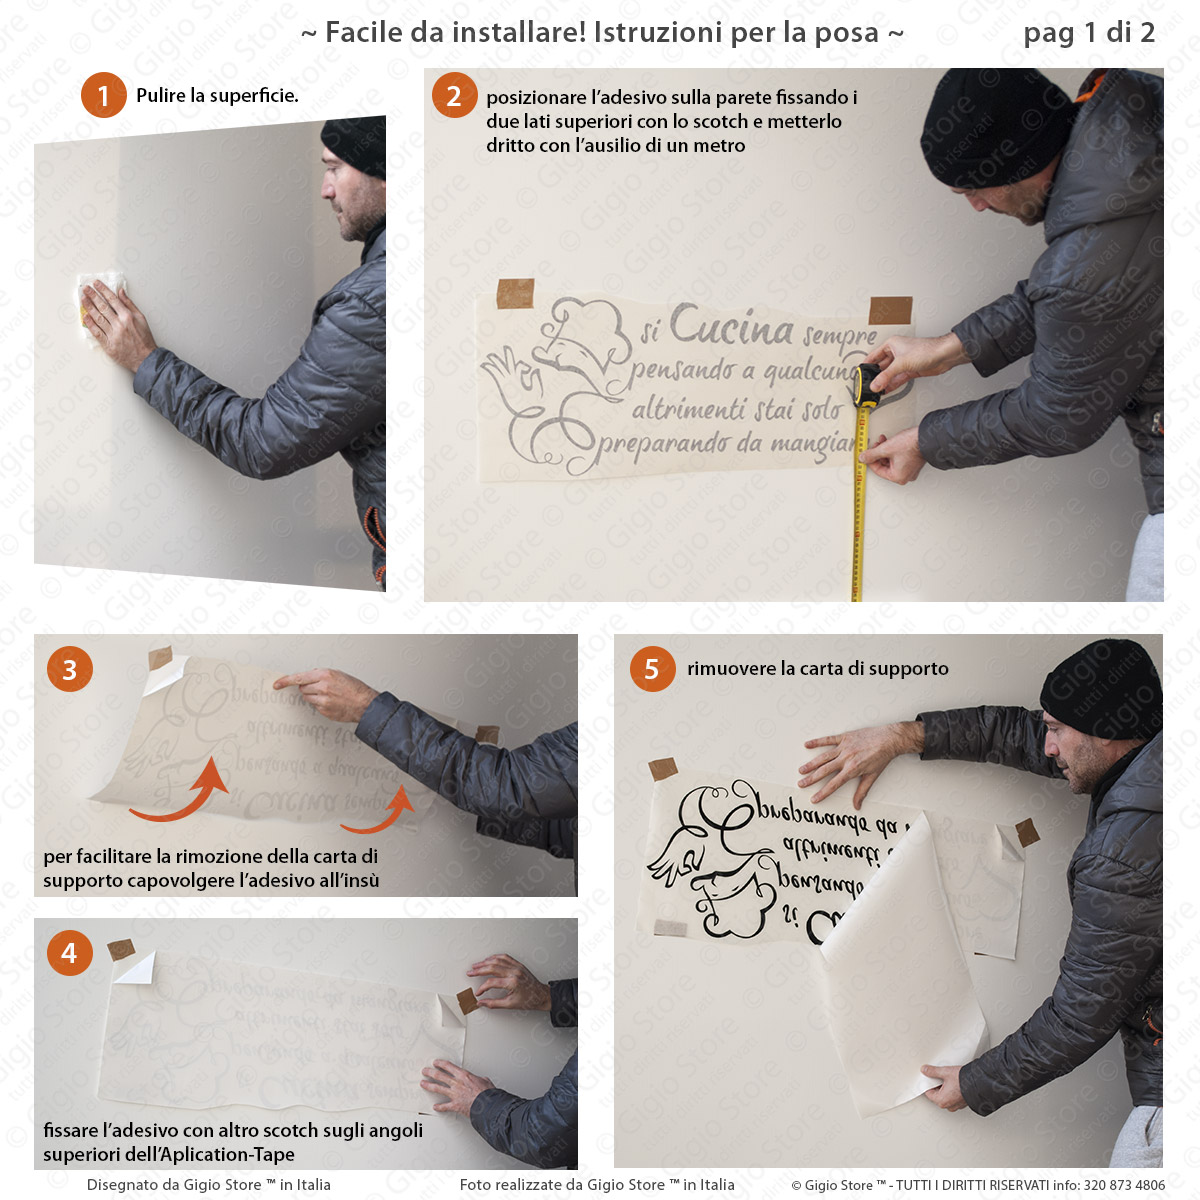 Gigio Store istruzioni applicazione sticker adesivo muro parete si cucina sempre pensando a qualcuno (1 parte)